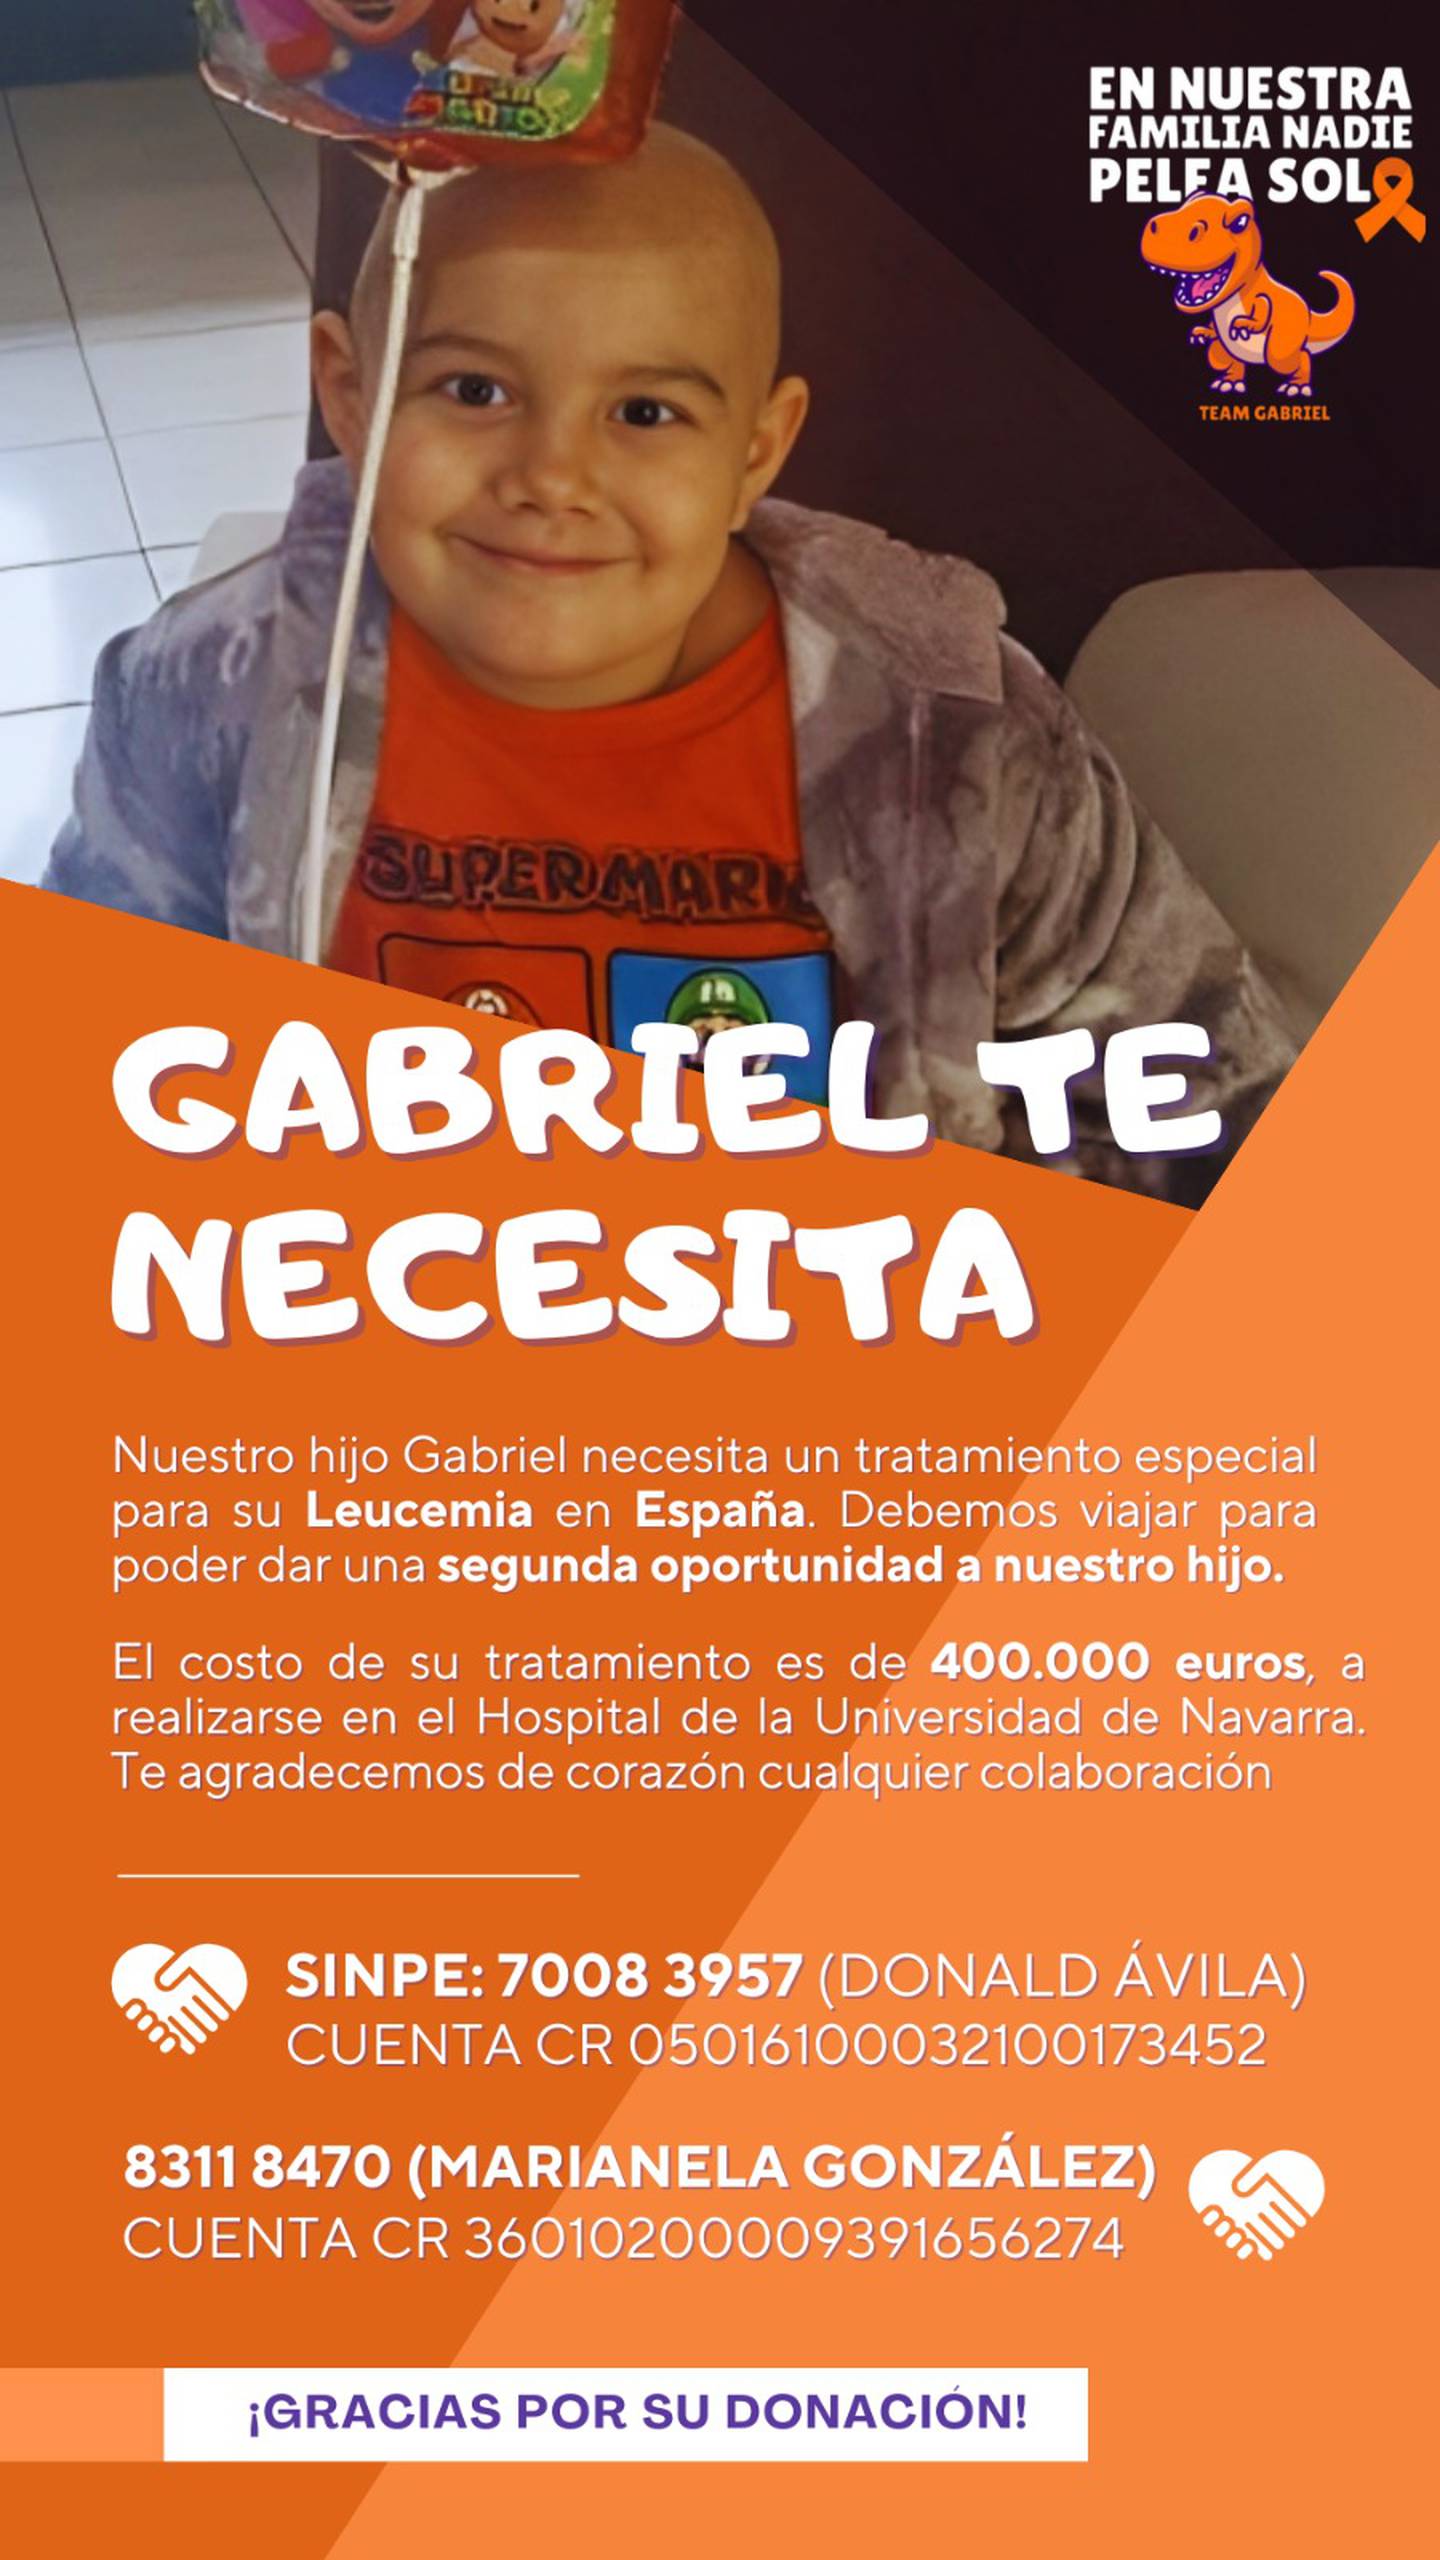 Luis Gabriel Ávila González es un niño tico de 7 años que está peleando una guerra contra la leucemia.